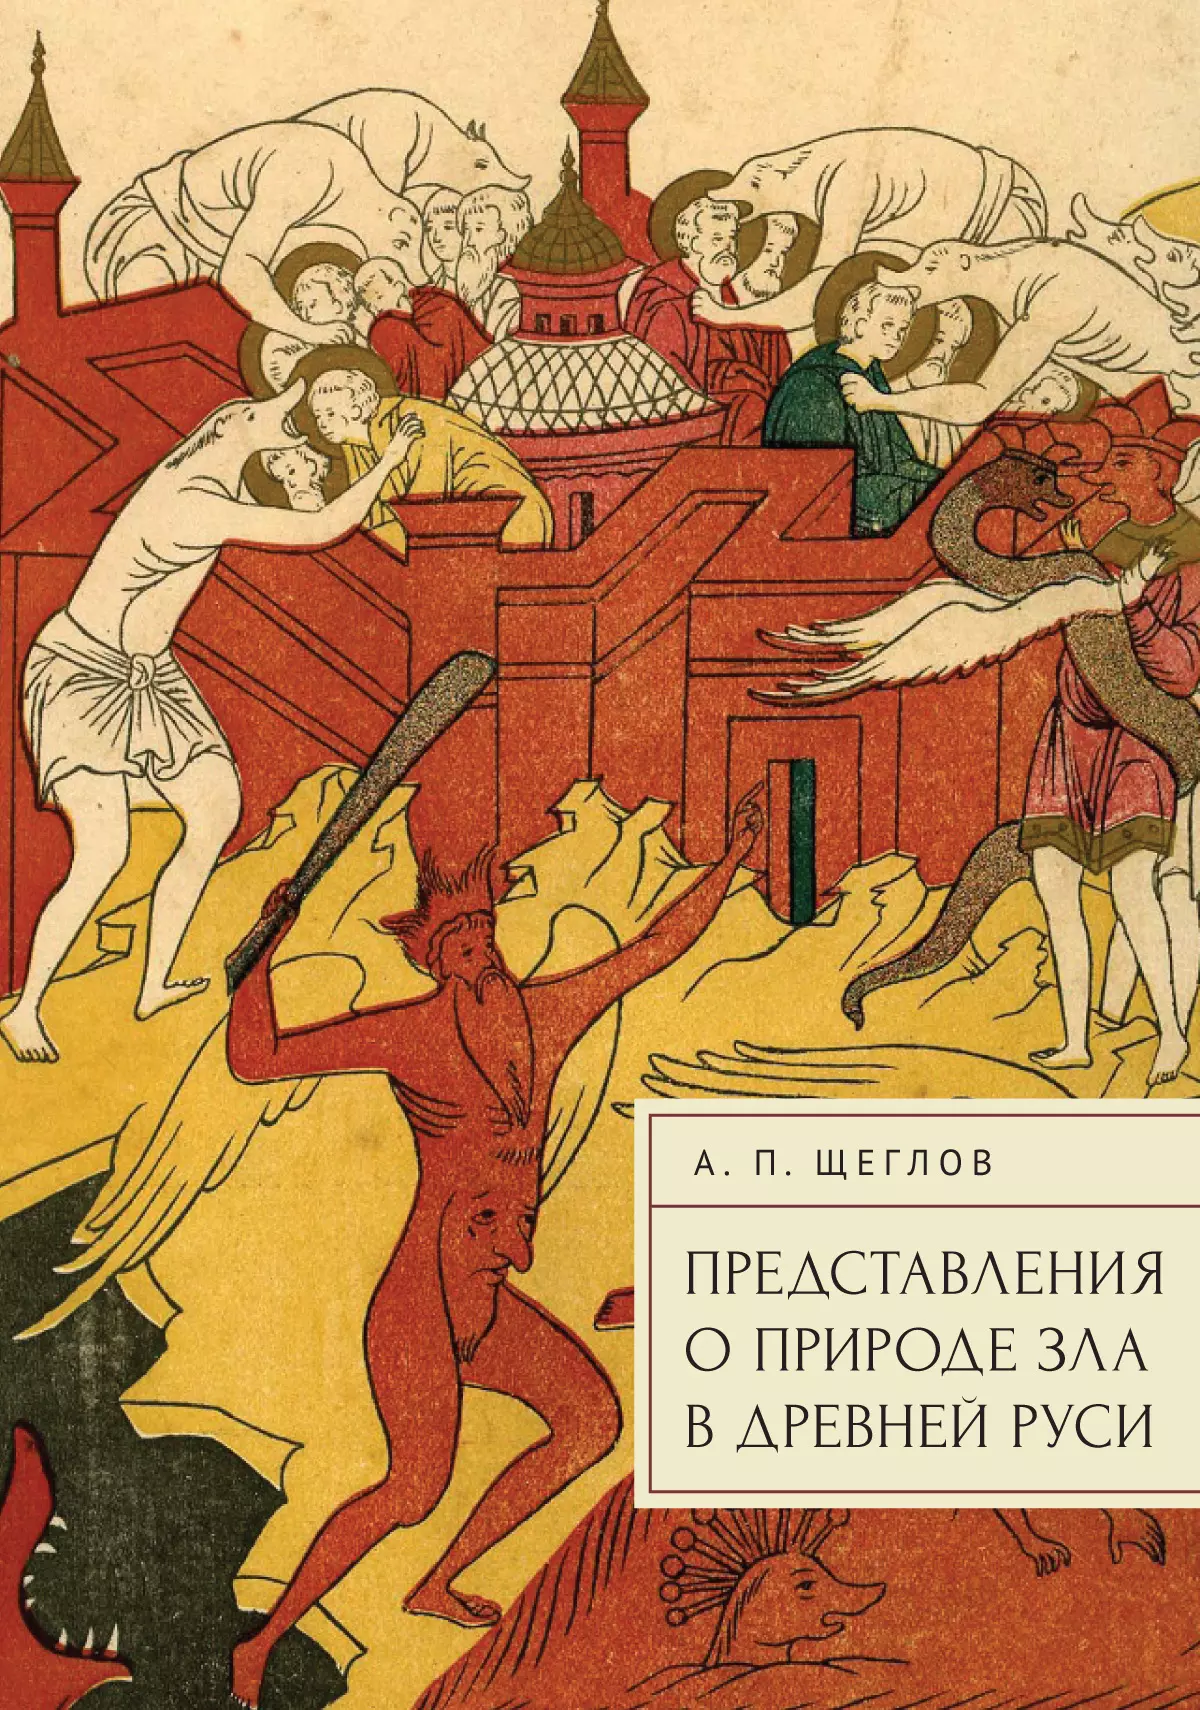 Щеглов Андрей Петрович - Представления о природе зла в Древней Руси